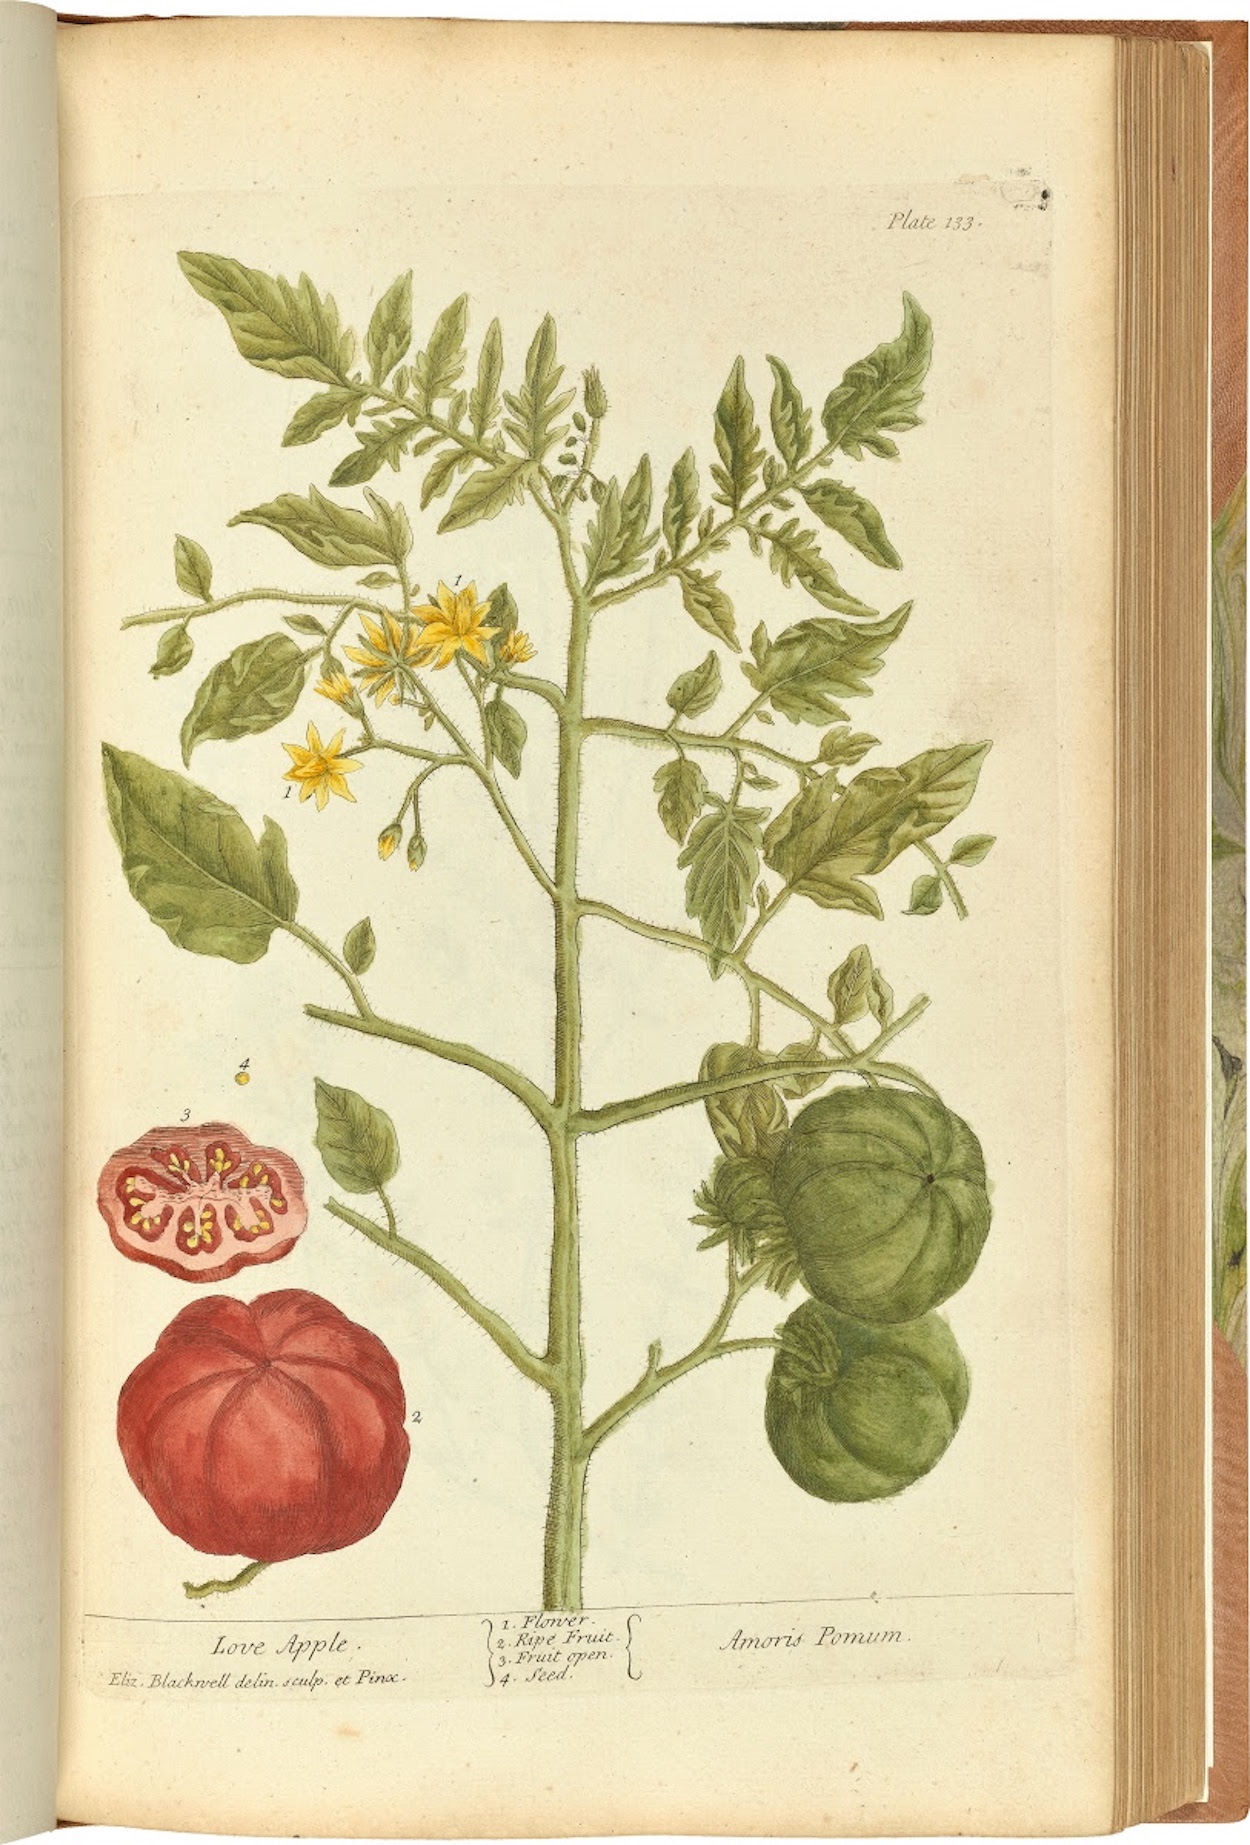 تفاحة الحب by Elizabeth Blackwell - 1737/1739 